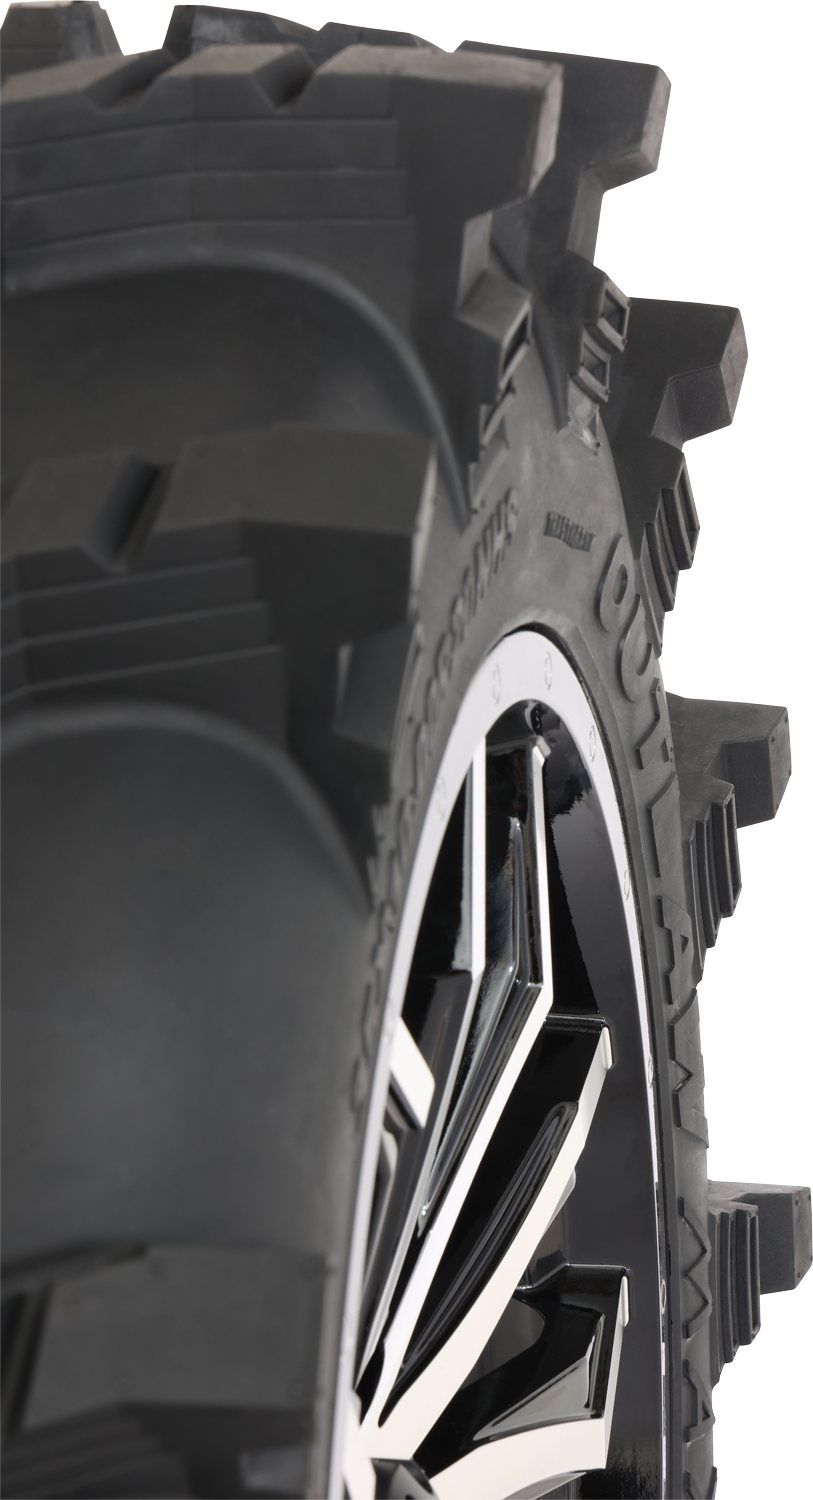 Neumático HIGH LIFTER - Outlaw Max - Delantero/Trasero - 28x10R14 - 8 capas 001-2325HL